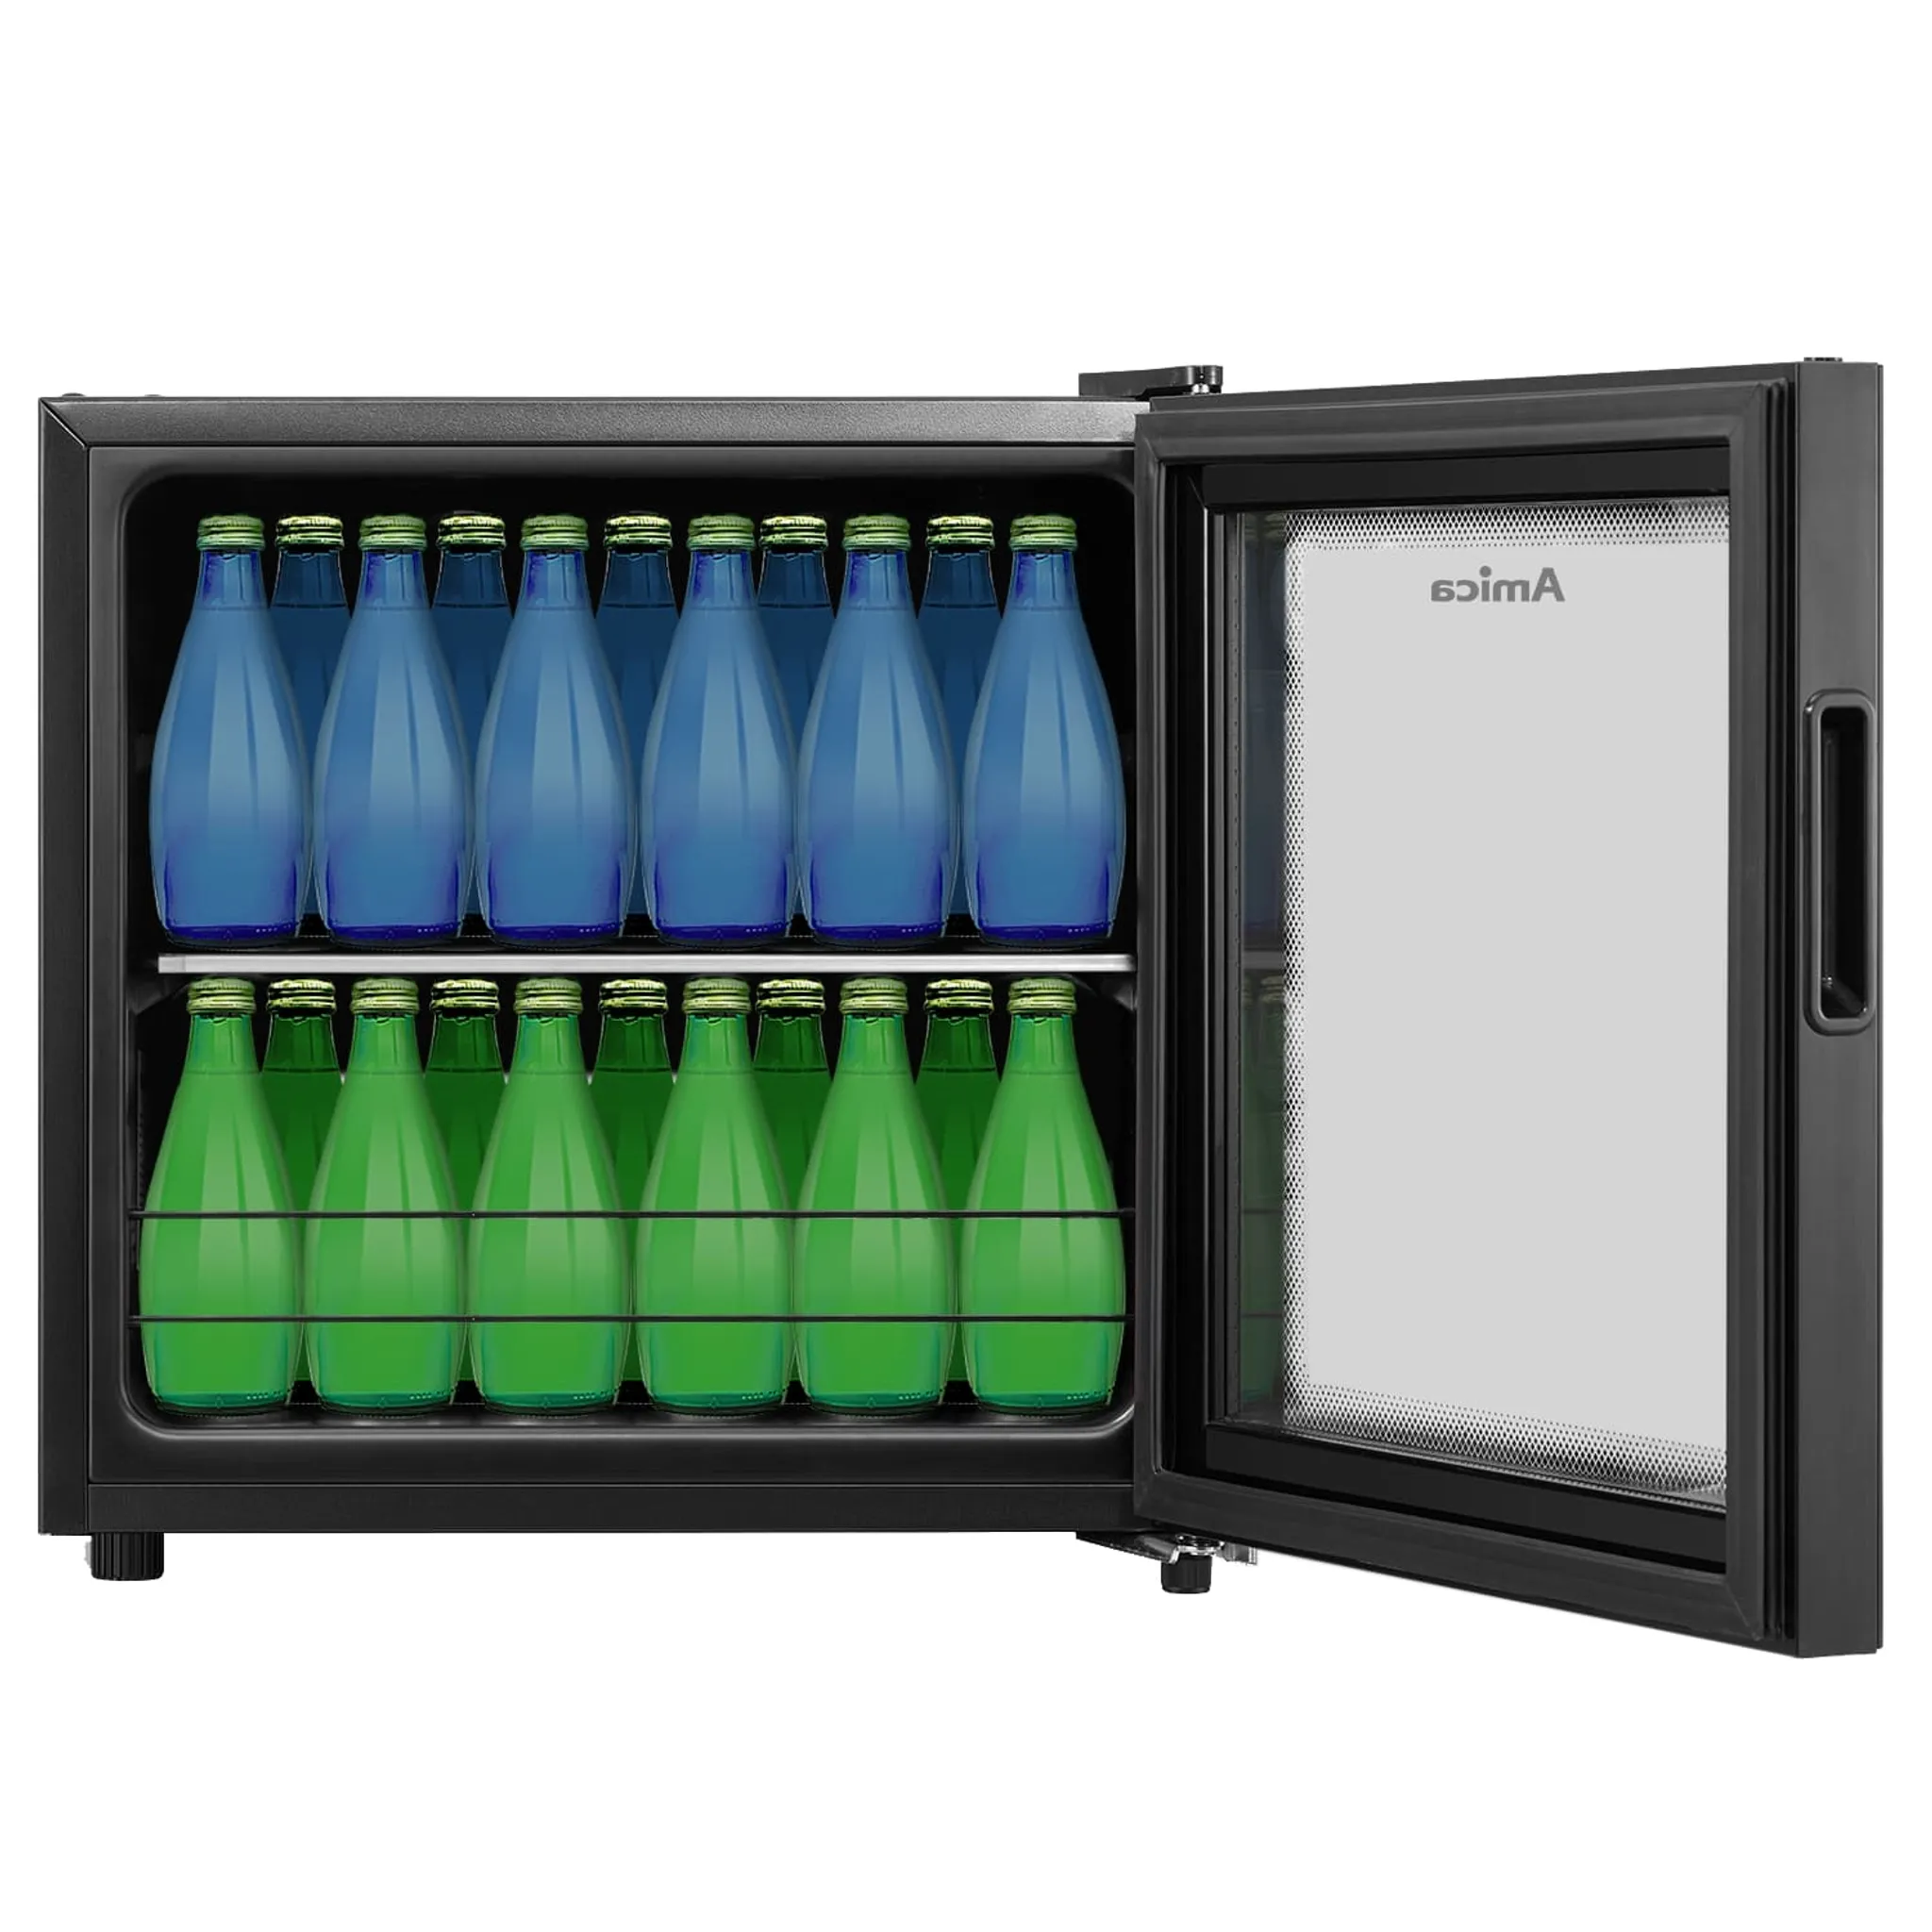 Einbau-kühlschrank EVKSS 357 980 Amica